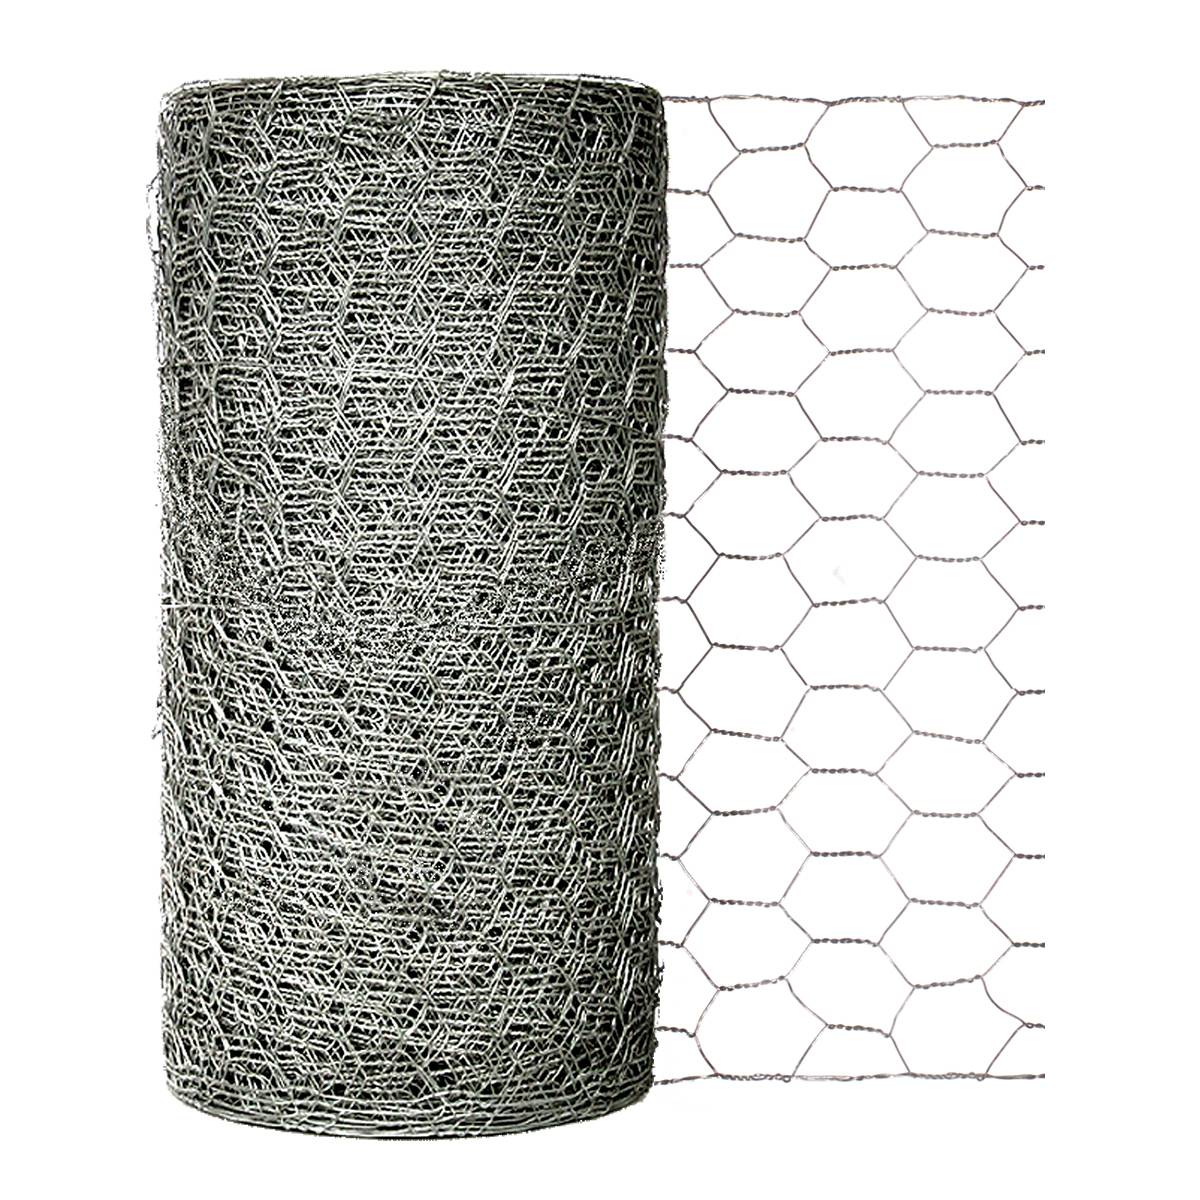 Chicken Wire Hexagonal Wire Netting Woven with Galvanized Steel Wire